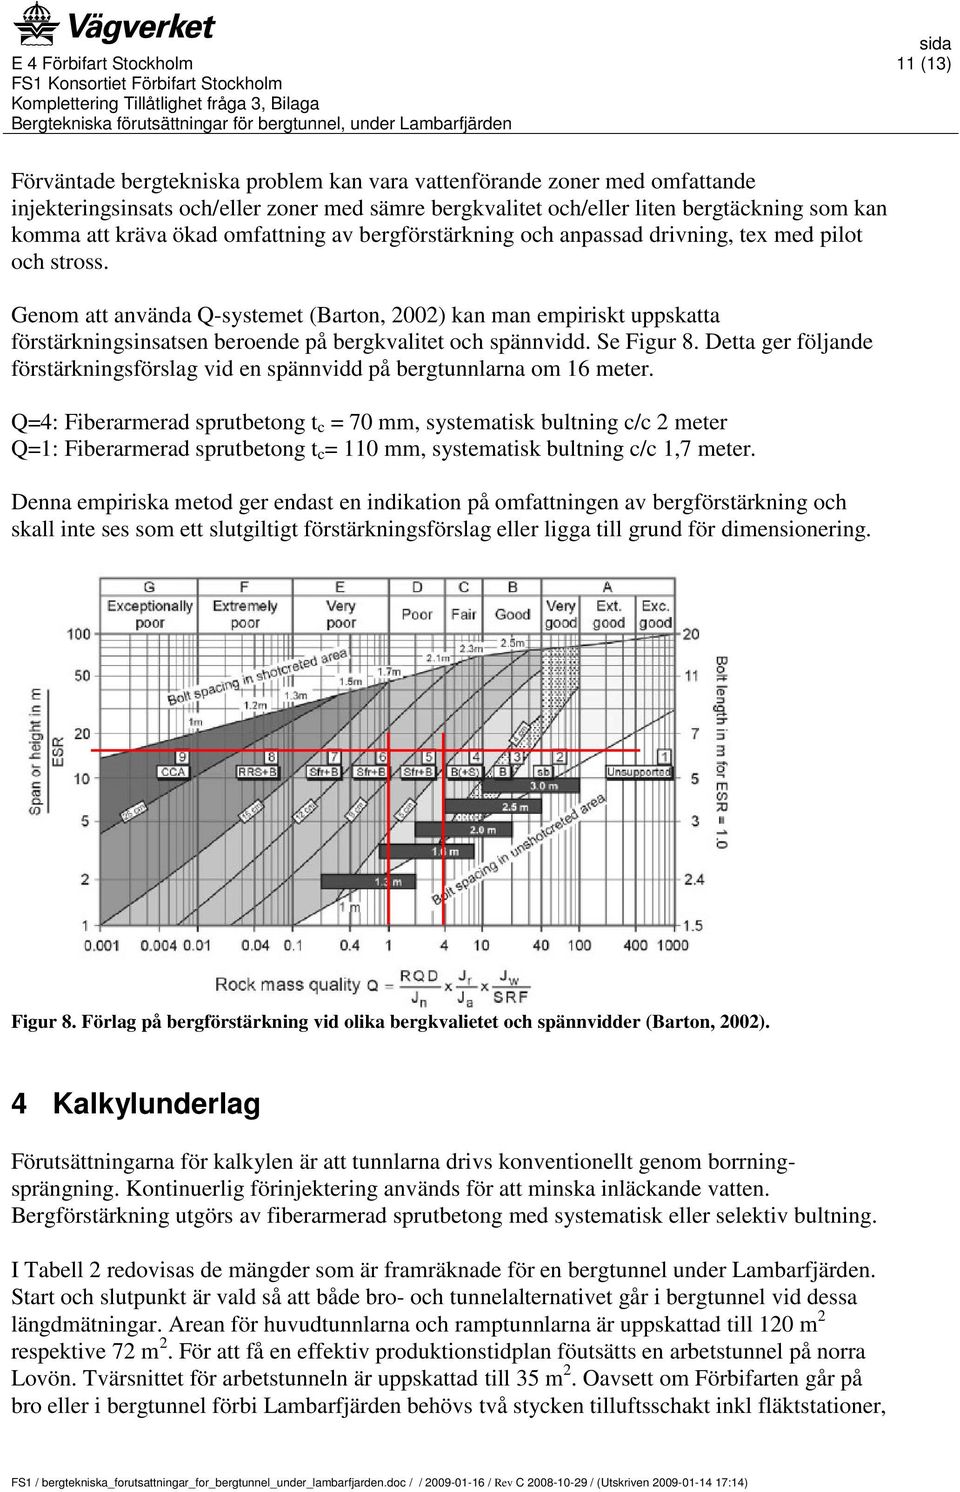 Genom att använda Q-systemet (Barton, 2002) kan man empiriskt uppskatta förstärkningsinsatsen beroende på bergkvalitet och spännvidd. Se Figur 8.